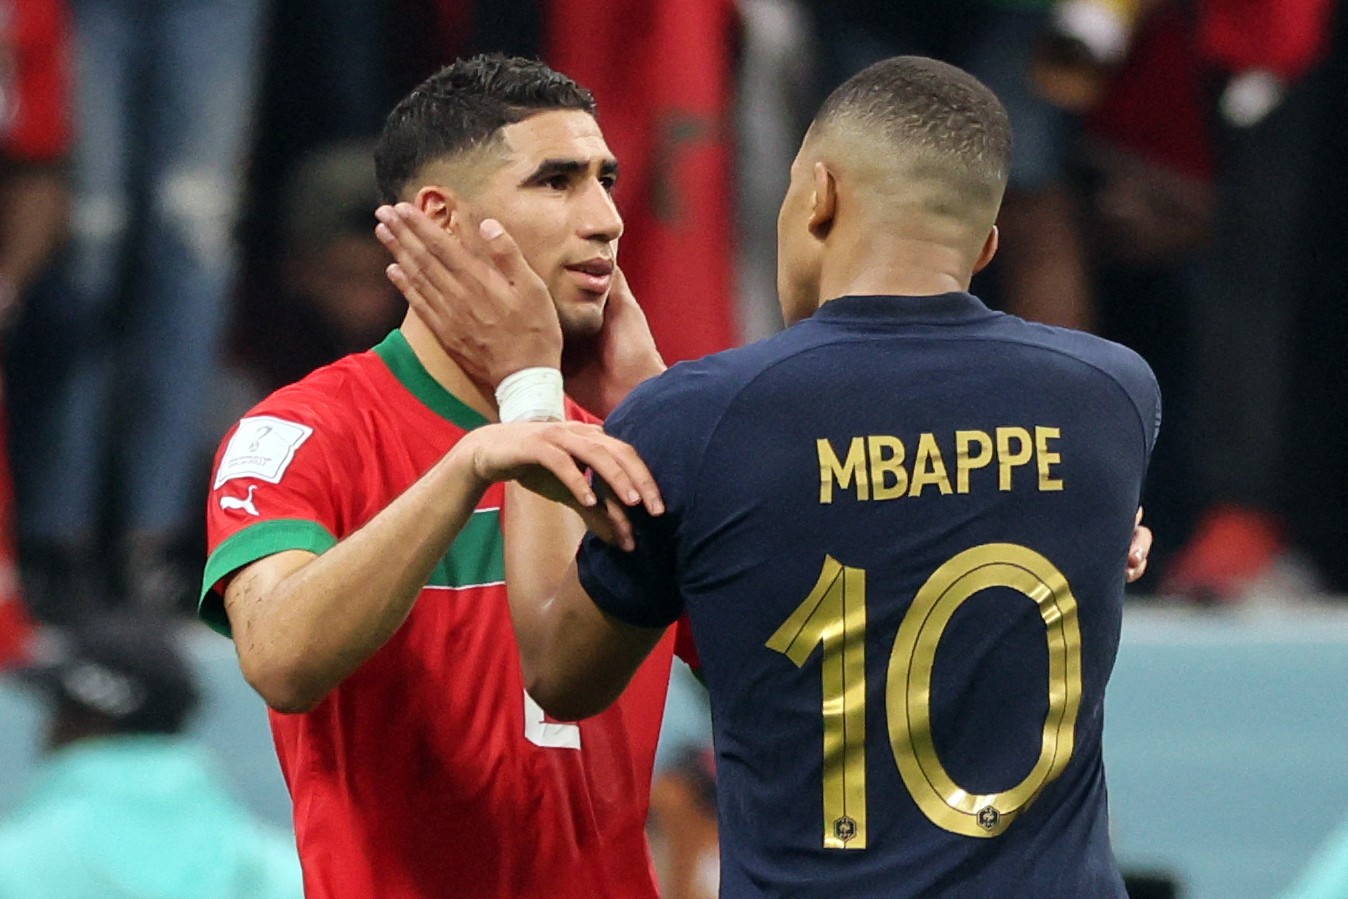 Mbappé conforta o zagueiro do Marrocos Achraf Hakimi ao final da partida — Foto: KARIM JAAFAR / AFP